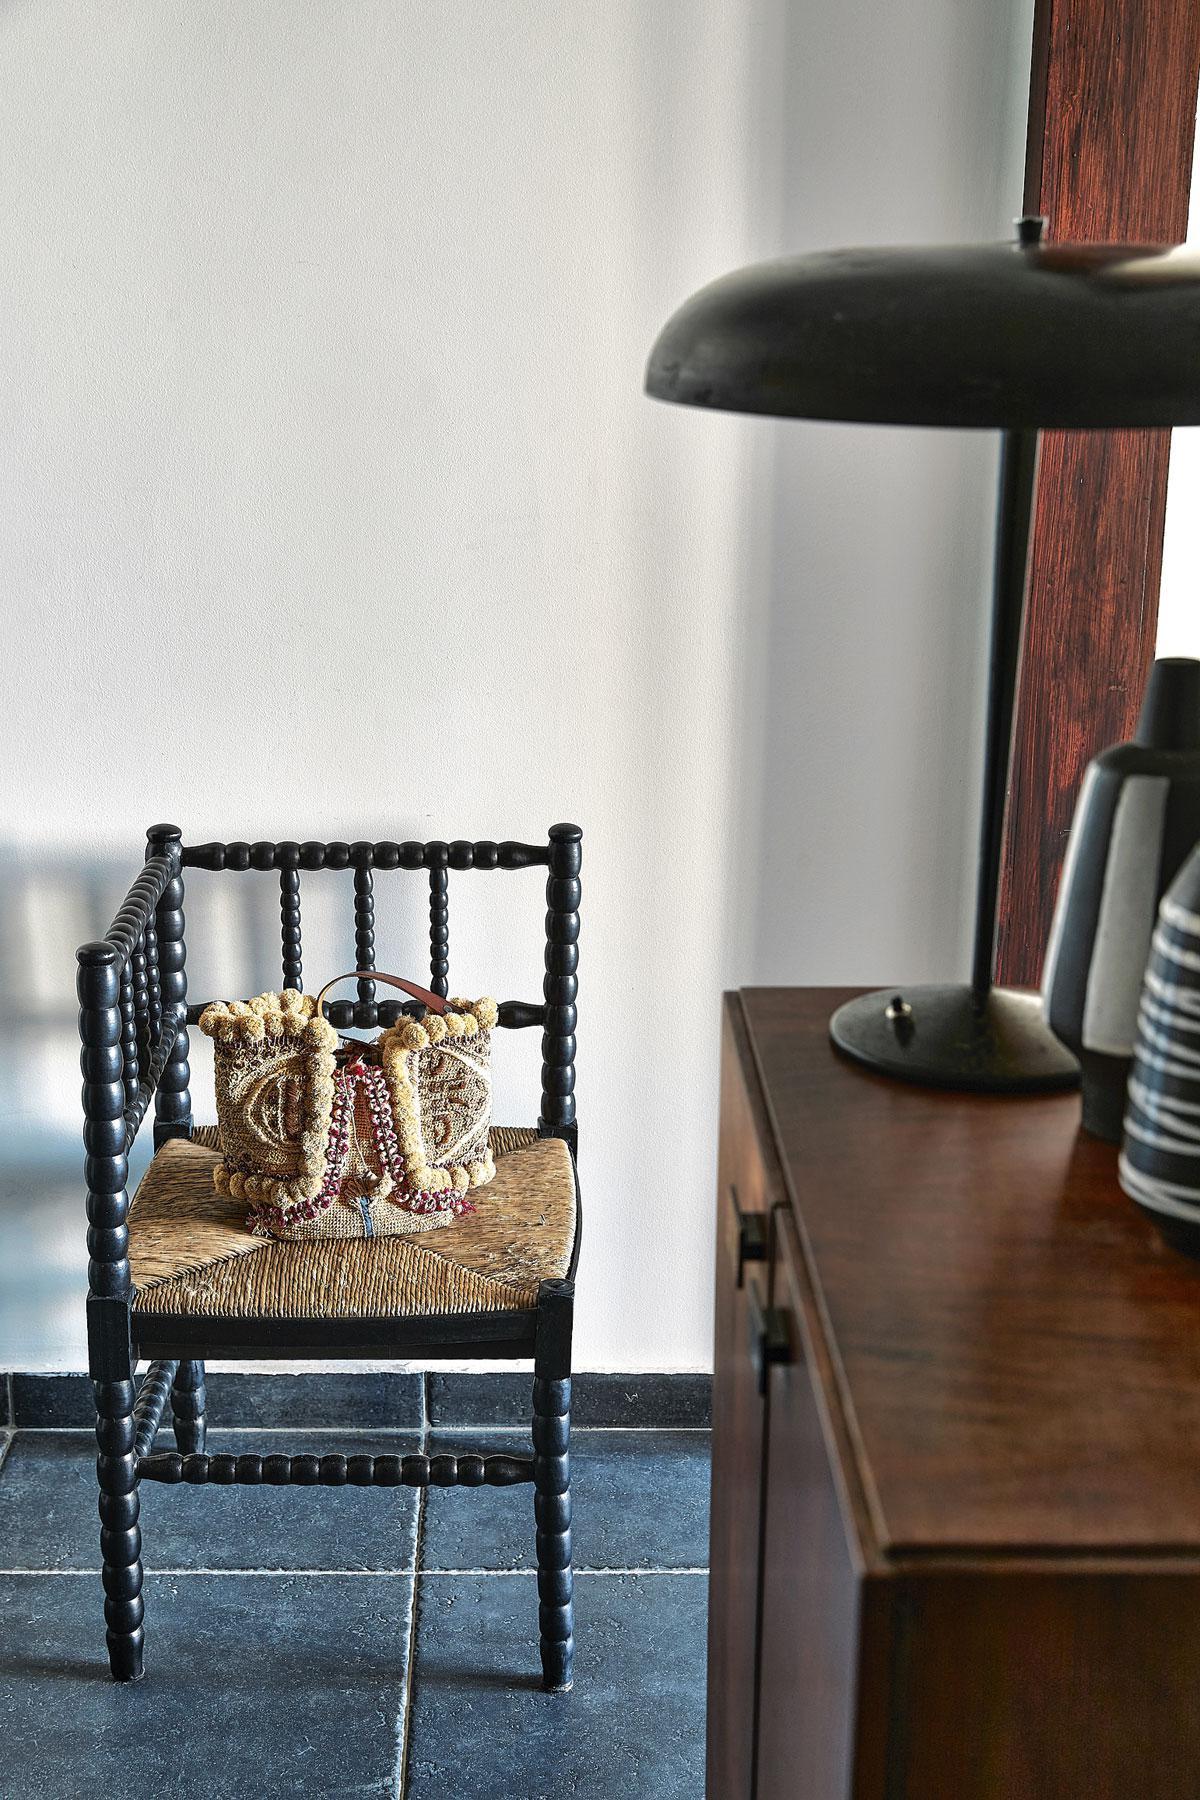 L’habitante aime les contrastes noir et blanc. Elle a habillé de cuir cette ancienne Corner Chair britannique, dénichée au Sablon. Ce sac en raphia est une trouvaille à Paris, où elle a longtemps vécu et travaillé.